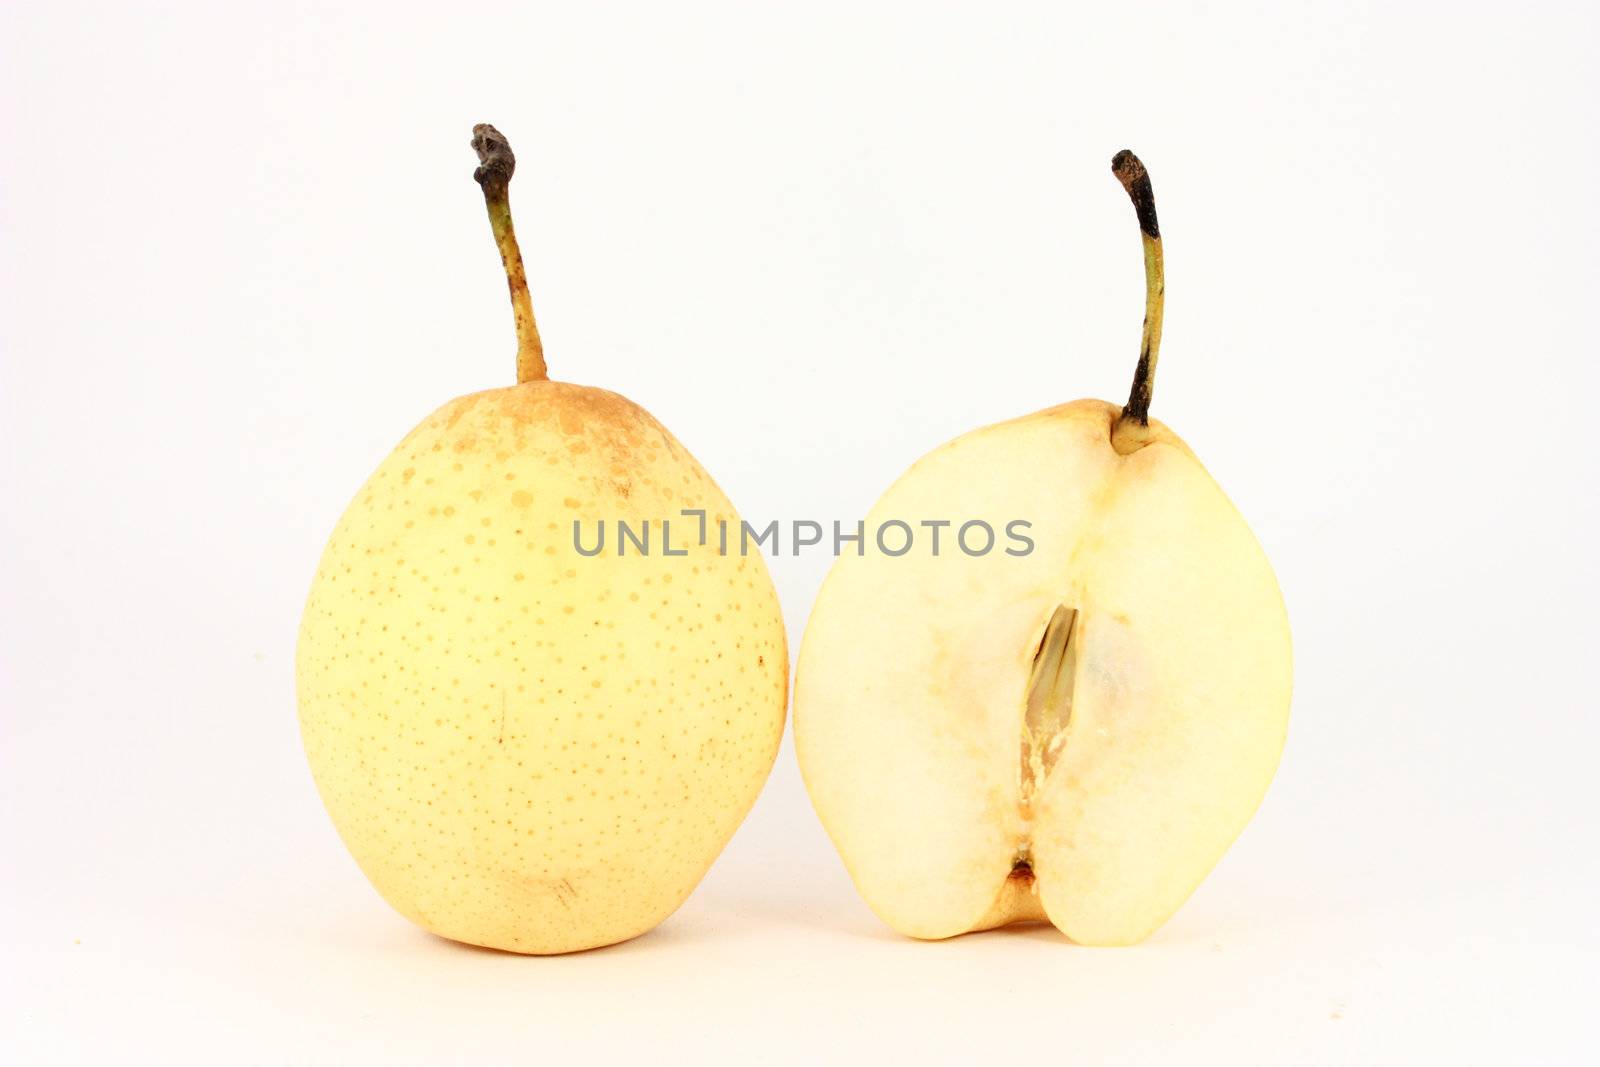 Chinese pear nashi isolated on white background